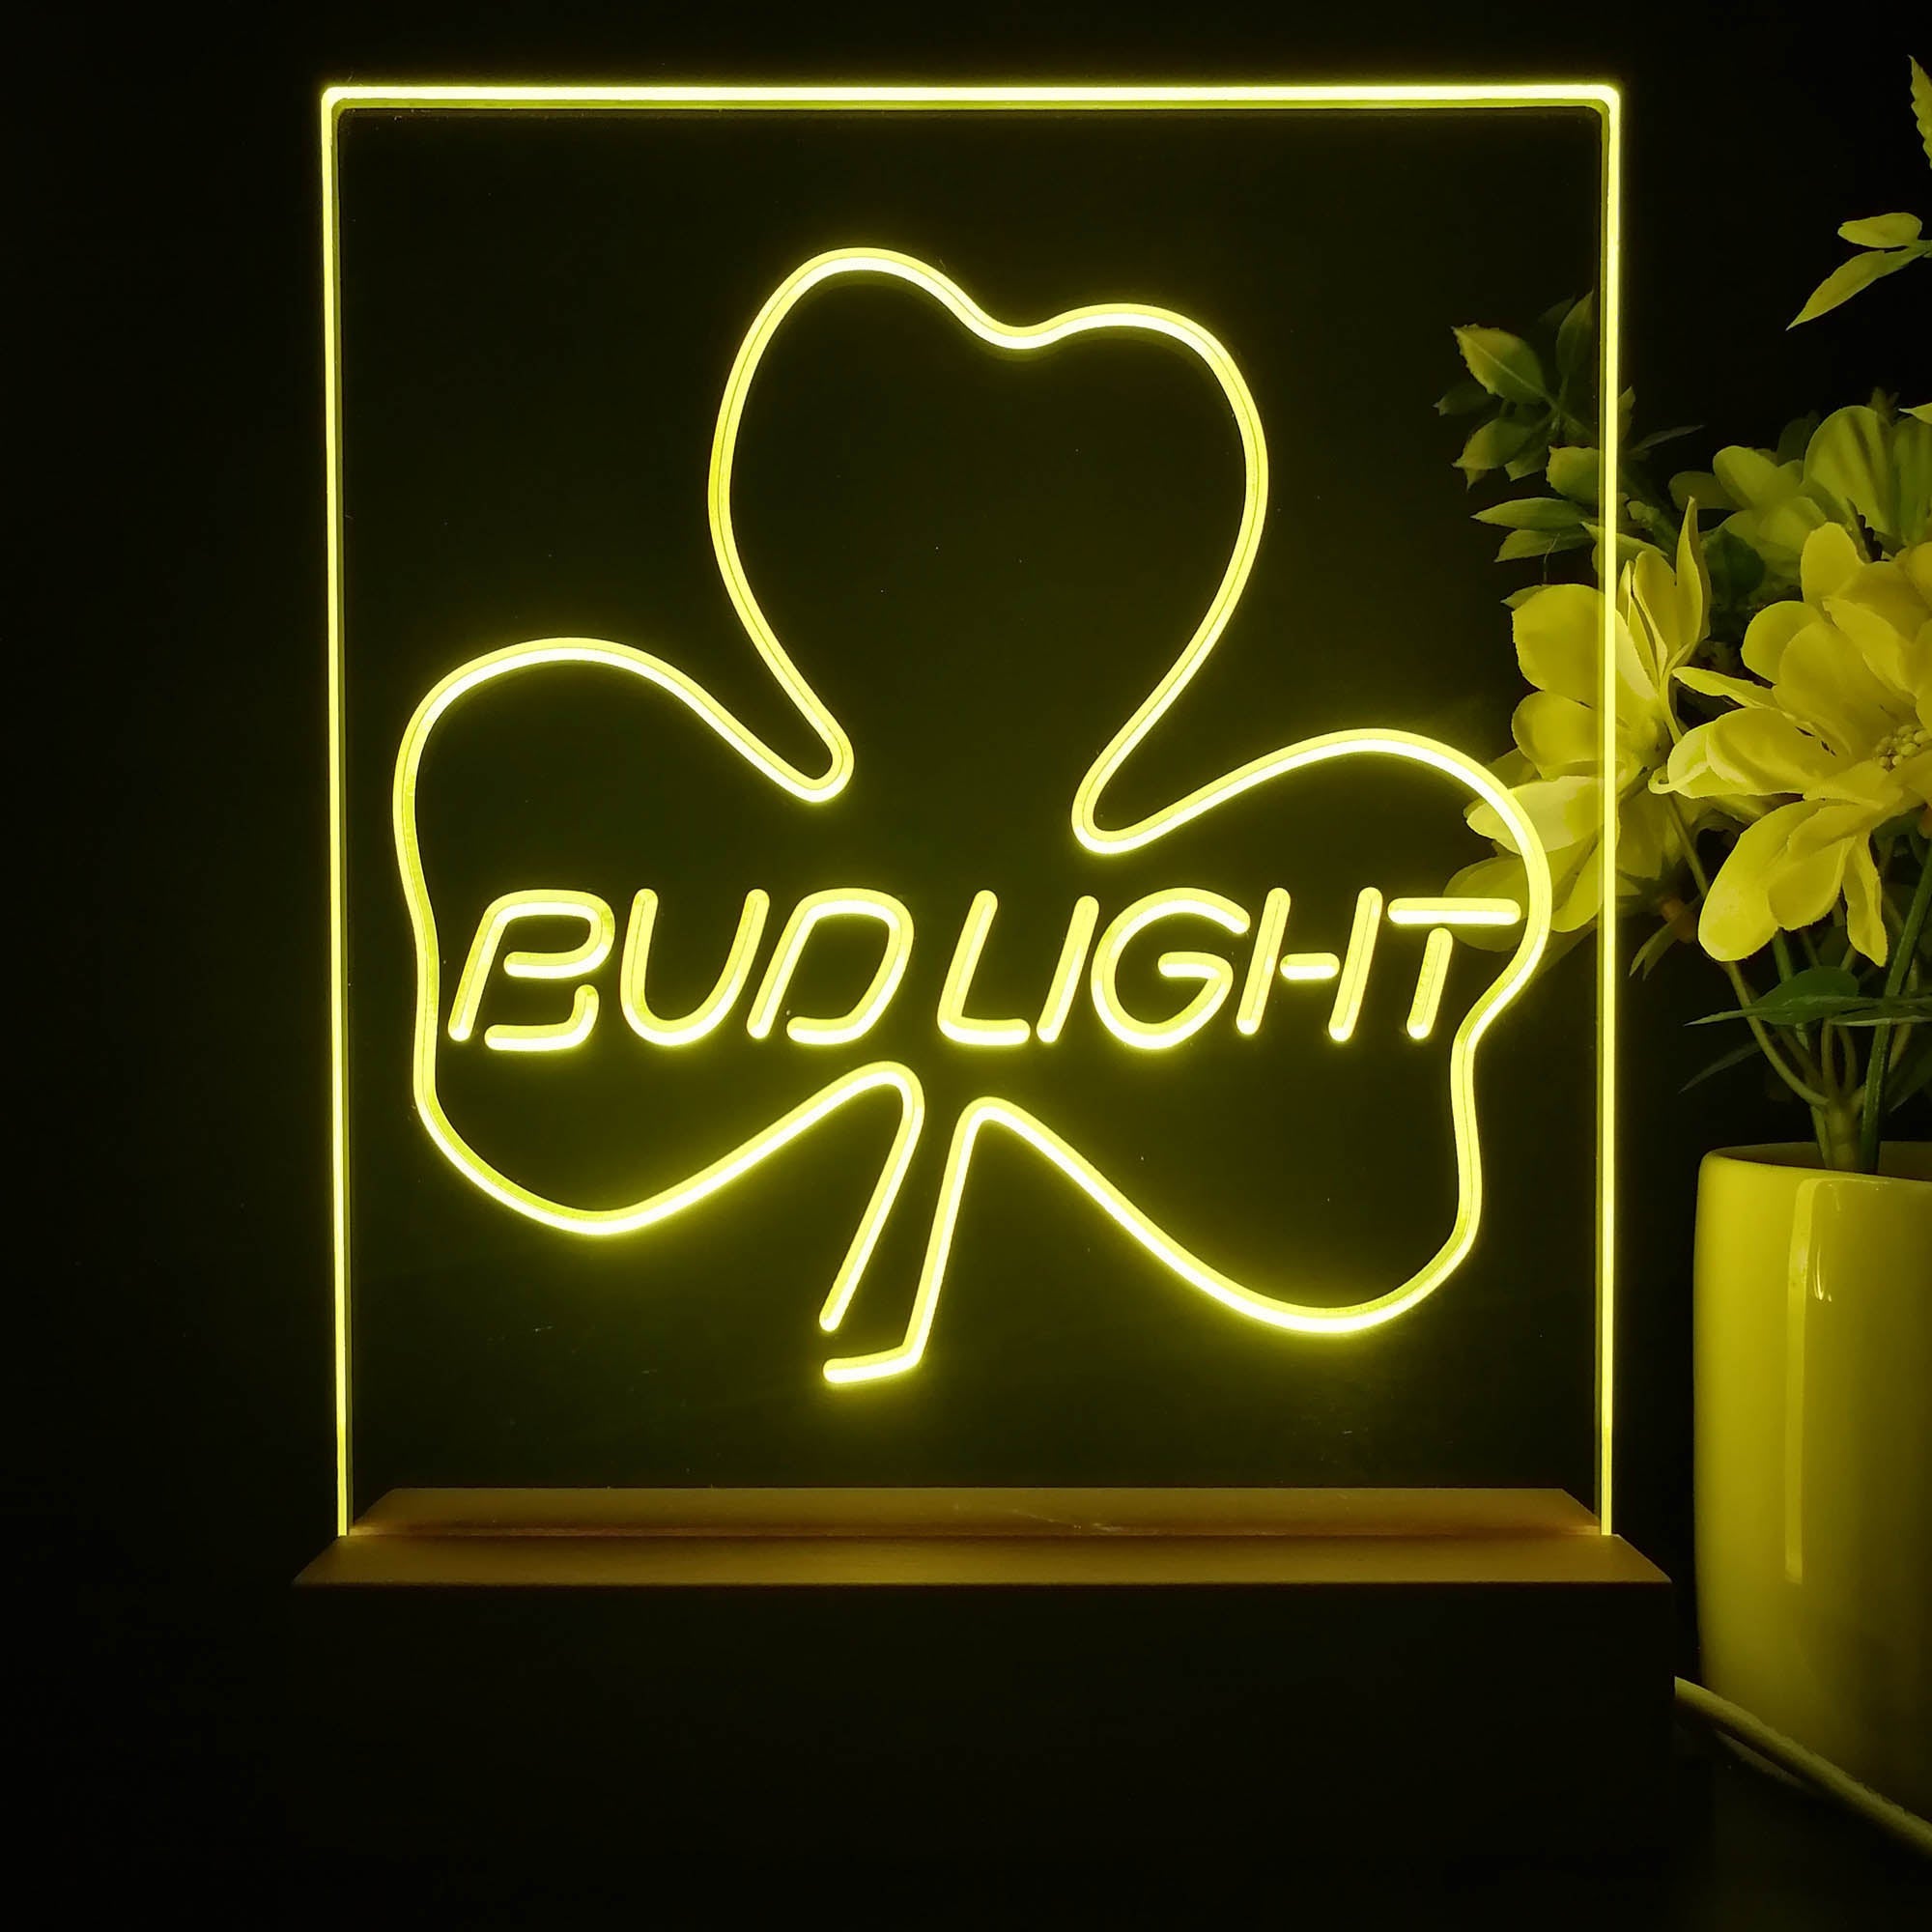 Bud Light Shamrock Beer Bar 3D Illusion Night Light Desk Lamp